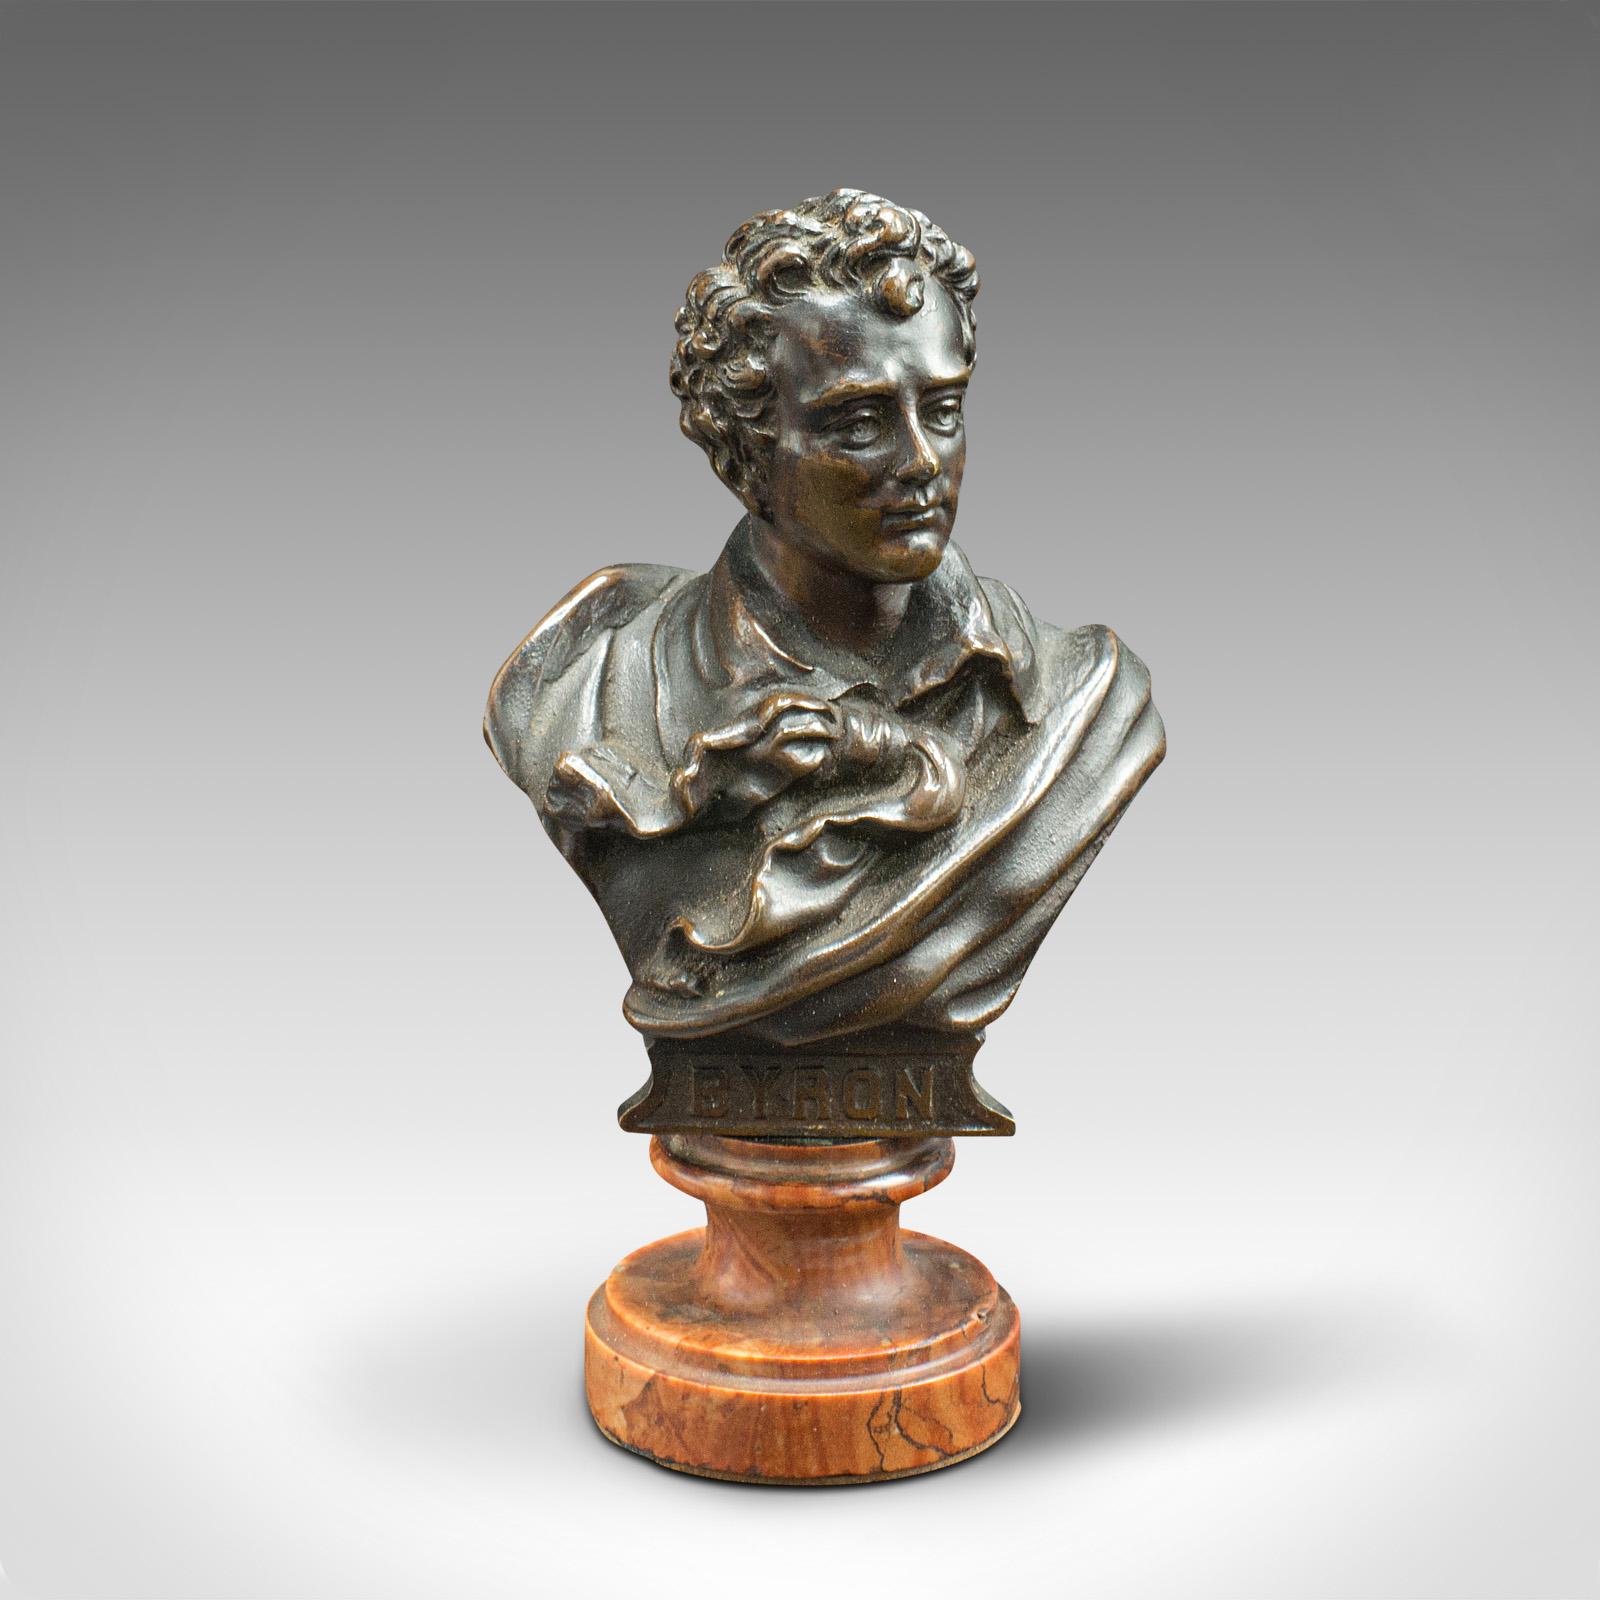 Il s'agit d'un petit buste de portrait antique. Figure autrichienne en bronze de Lord Byron (1788 - 1824) posée sur du marbre, datant de la fin de la période victorienne, vers 1900.

De petite forme, avec un détail de caractère et une légère